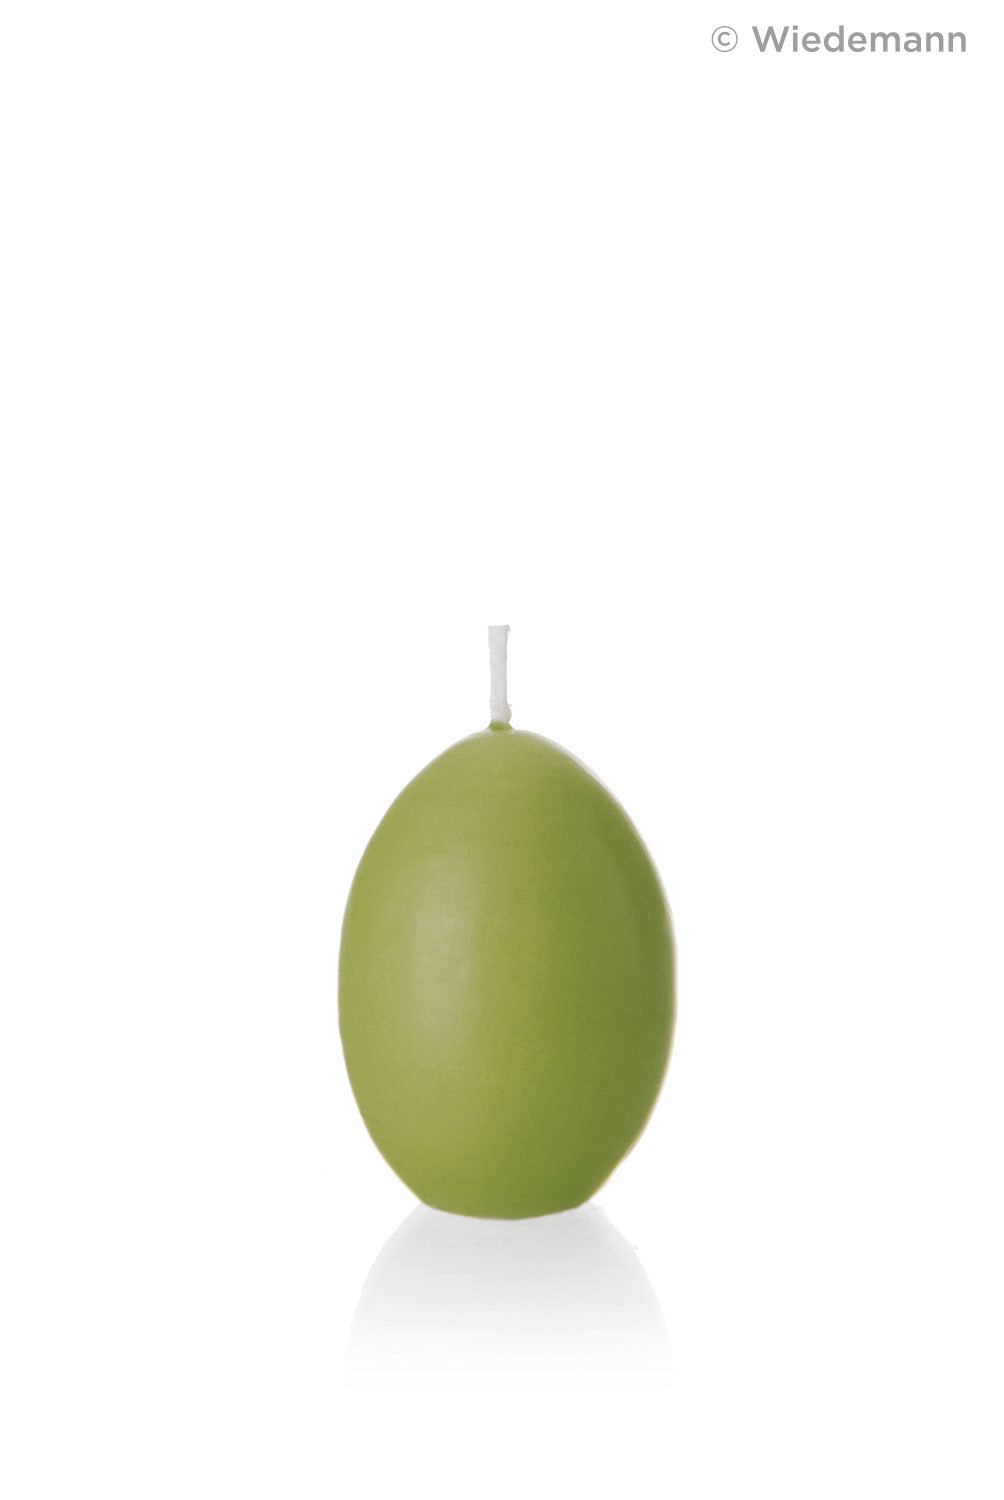 Eierkerze, Osterei, 6,1 x 4,4 cm, grün